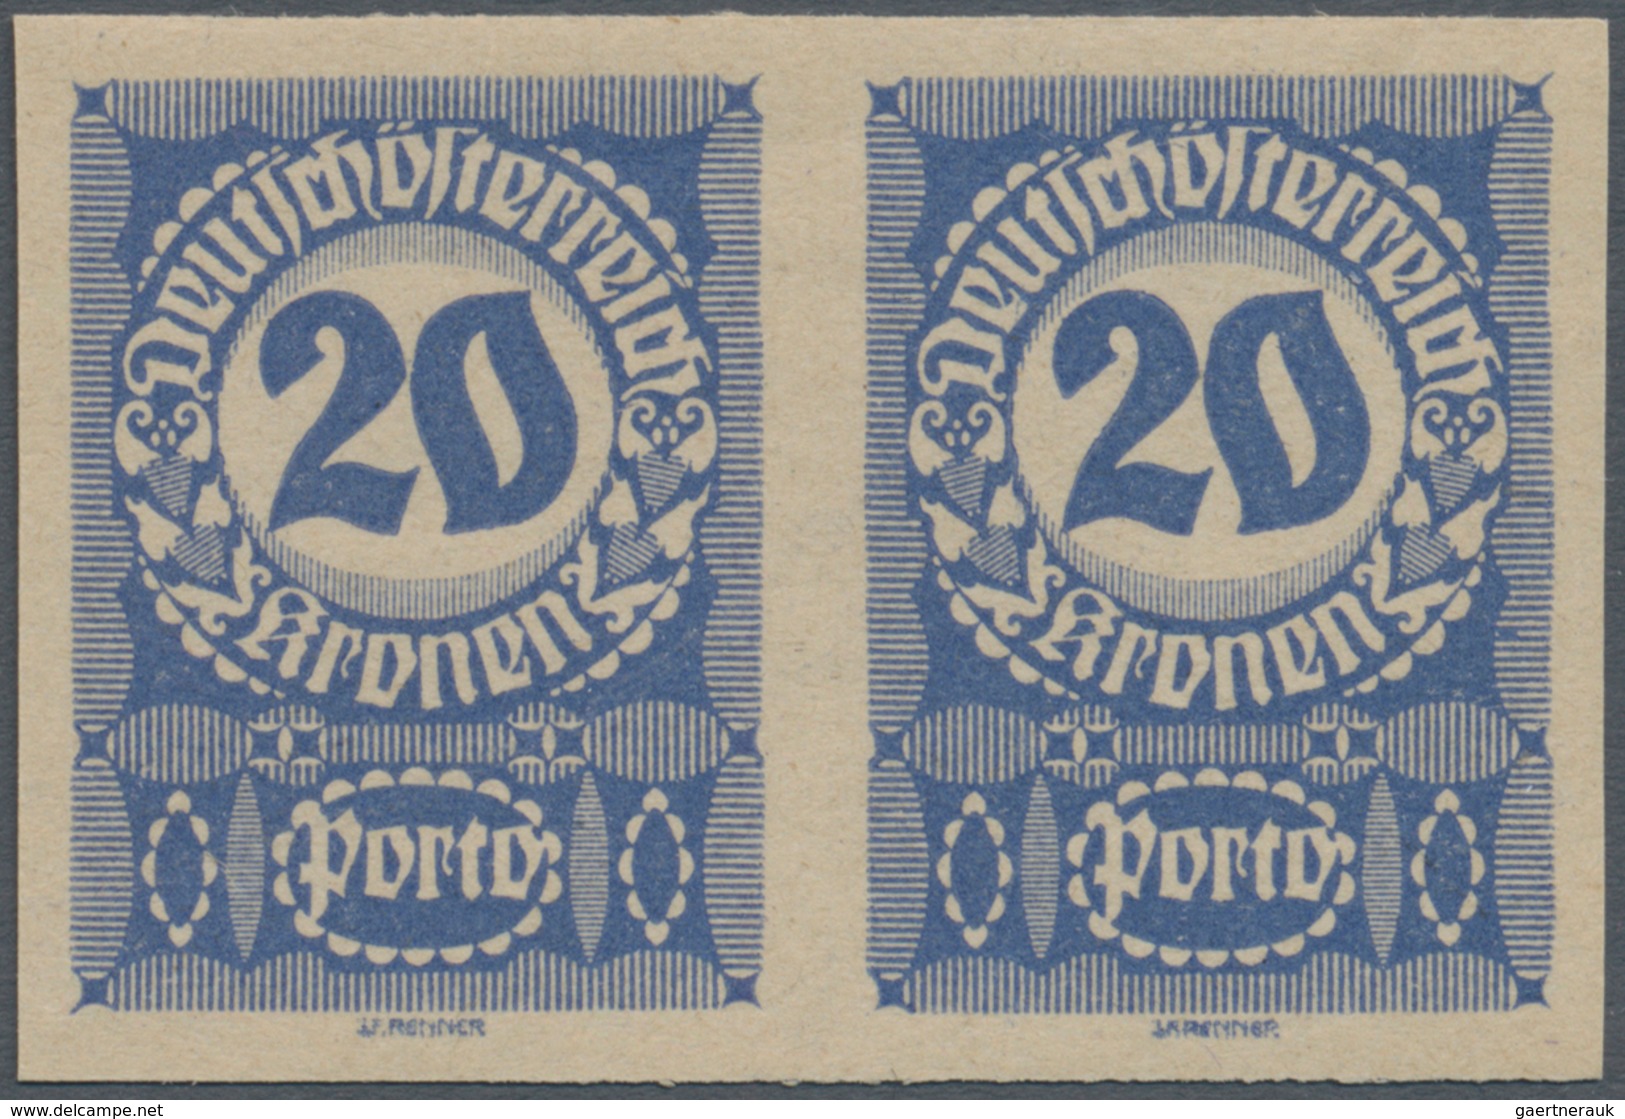 Österreich - Portomarken: 1920/1921, Ziffern, 1 Kr. bis 20 Kr., neun Werte in ungezähnten waagerecht